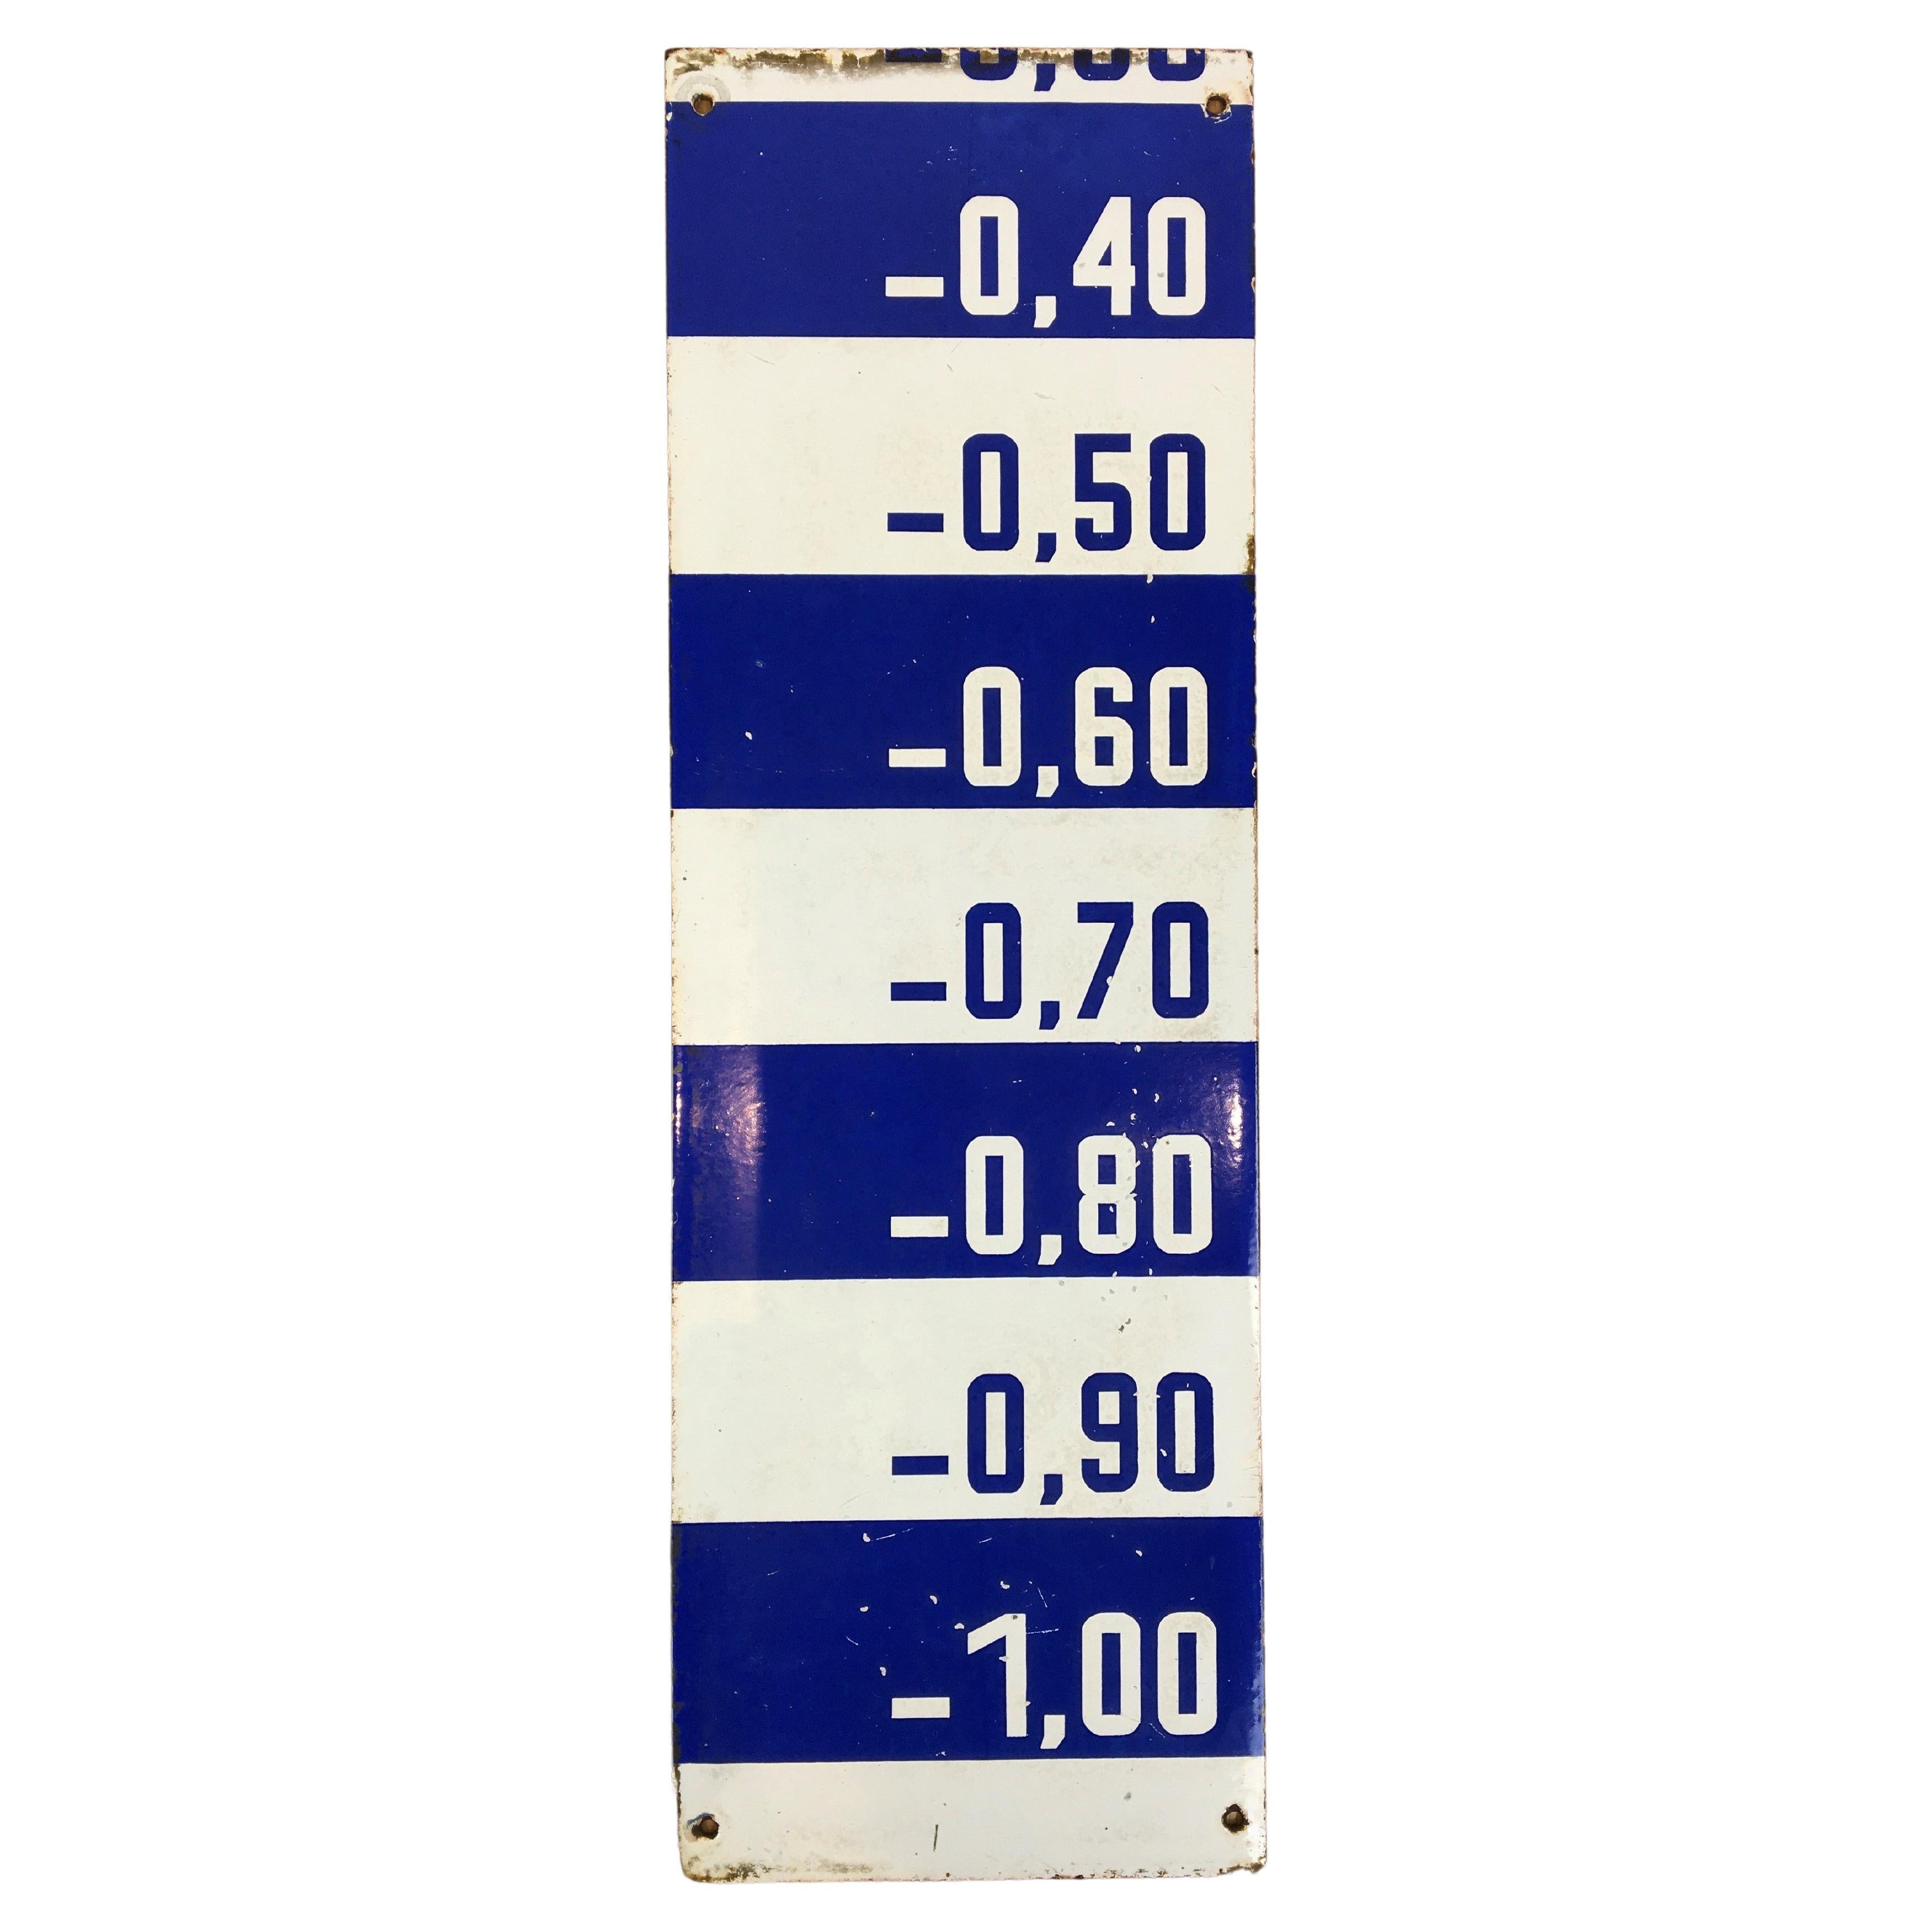 Porzellan-Wasser Level-Schild in Blau und Weiß